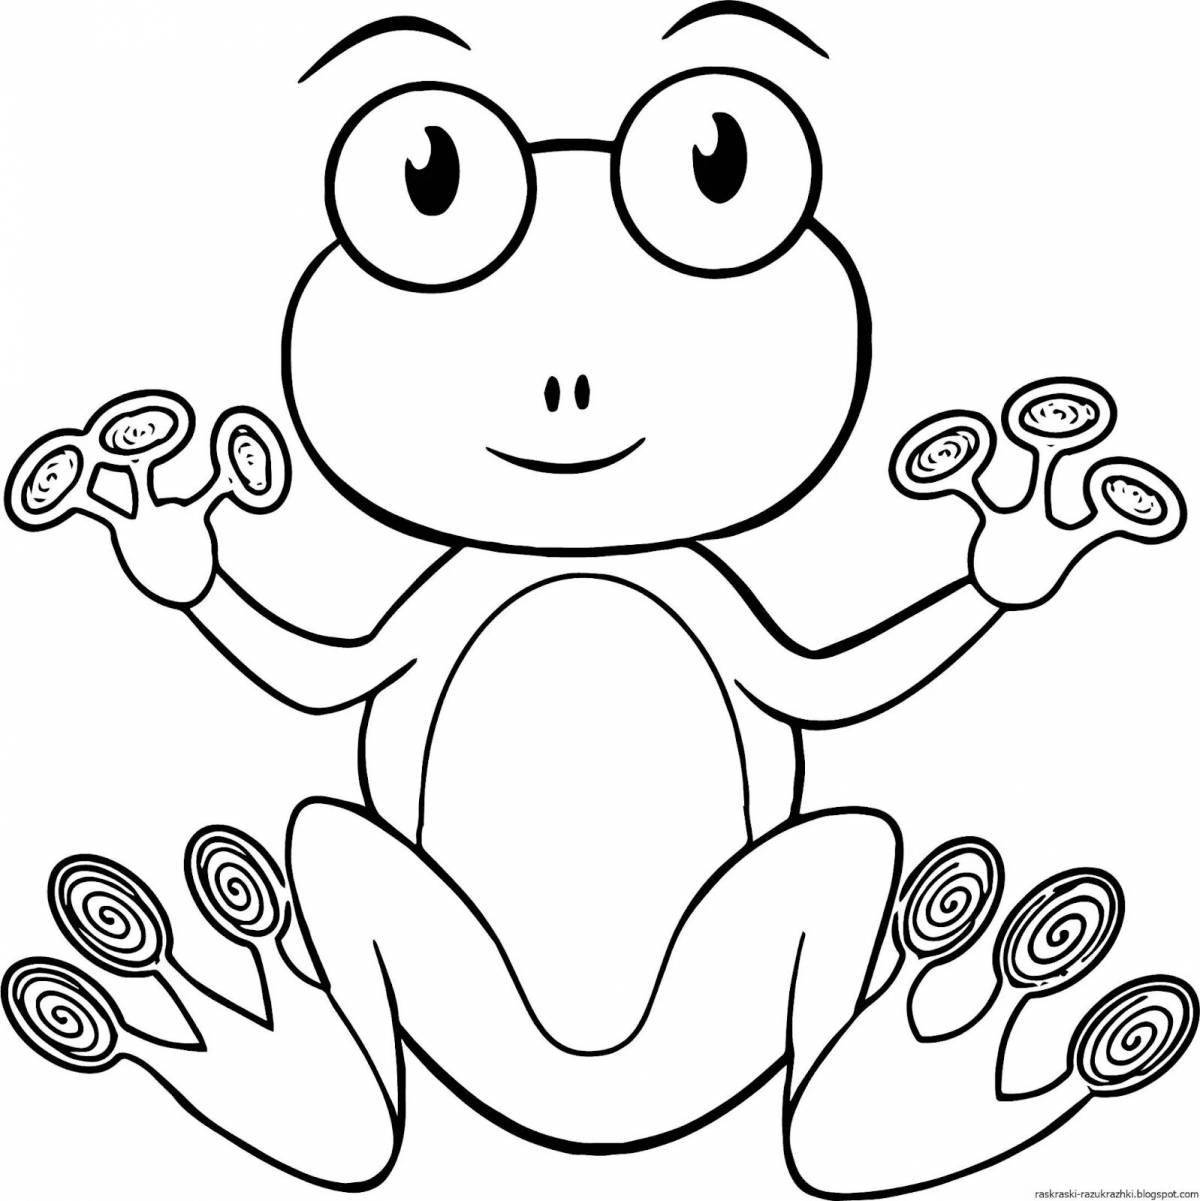 Милая лягушка-раскраска для детей